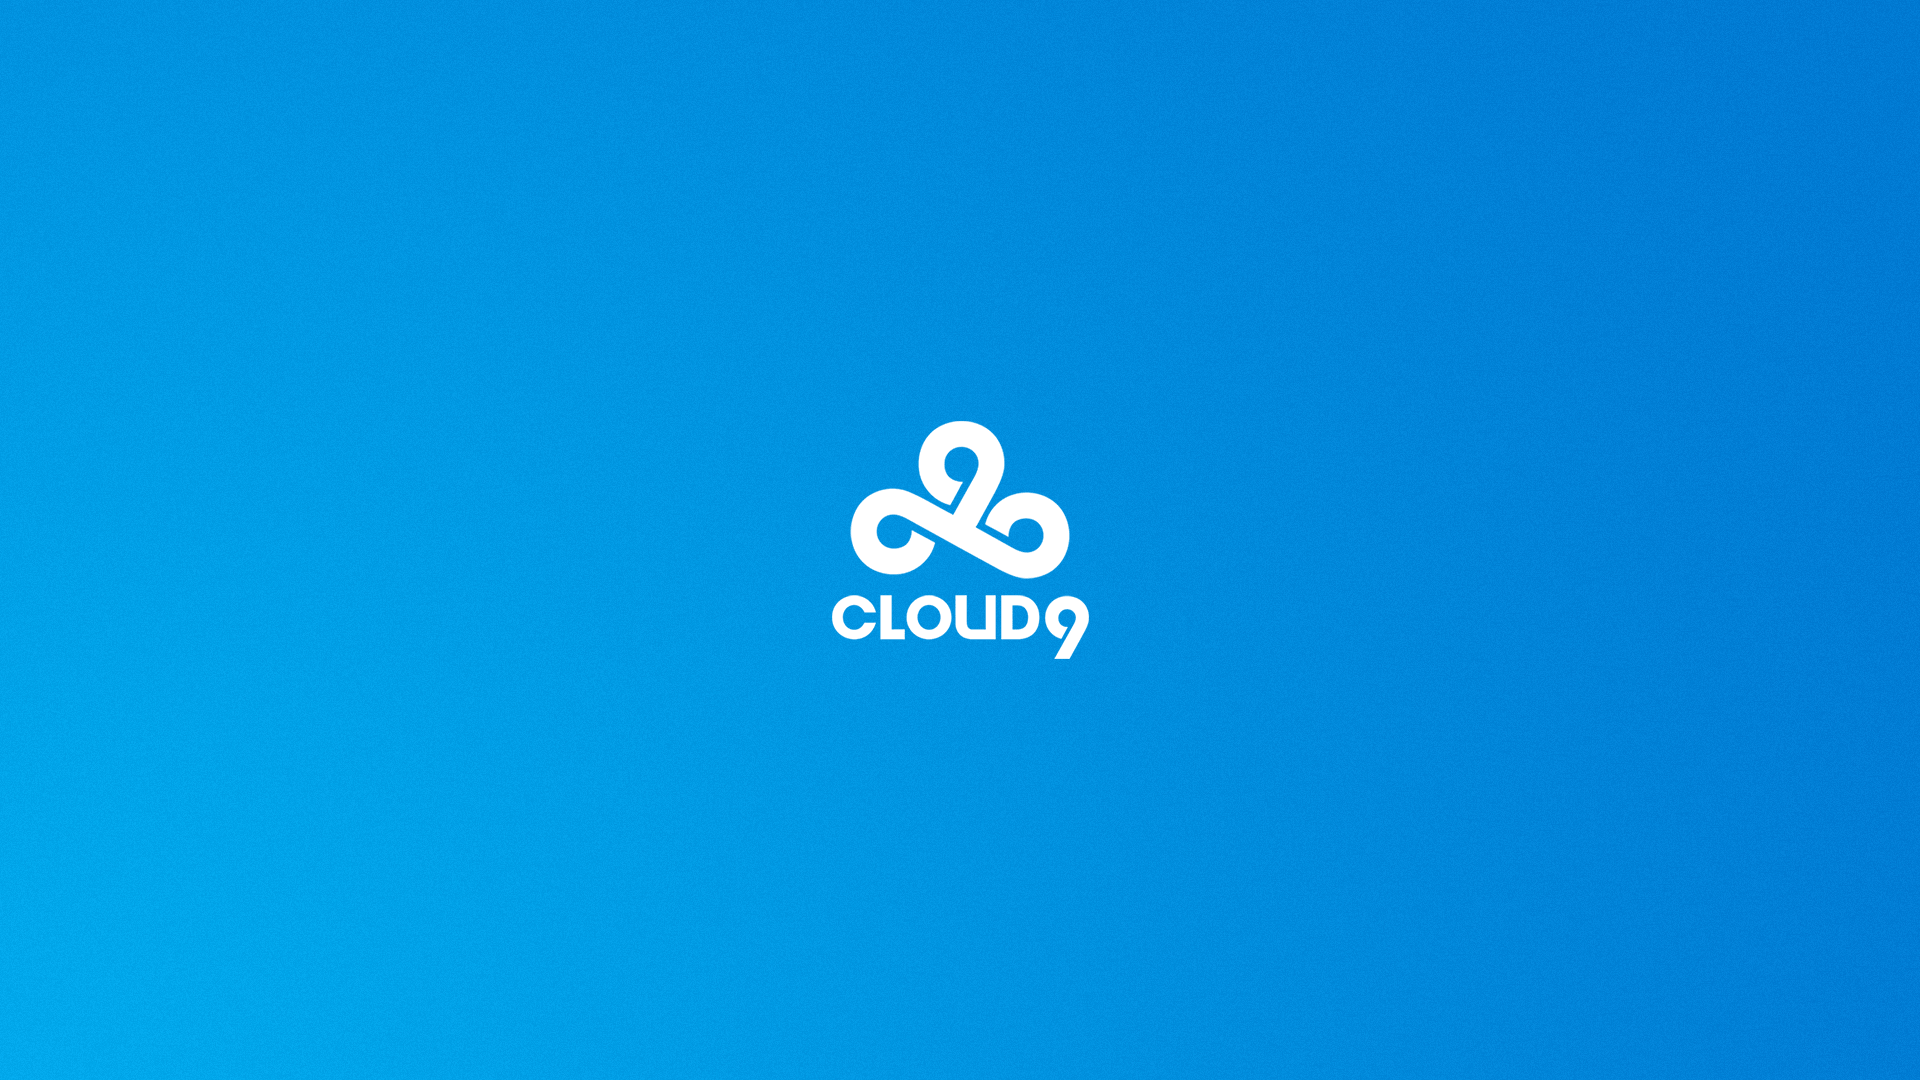 48+] Cloud 9 Wallpaper - WallpaperSafari